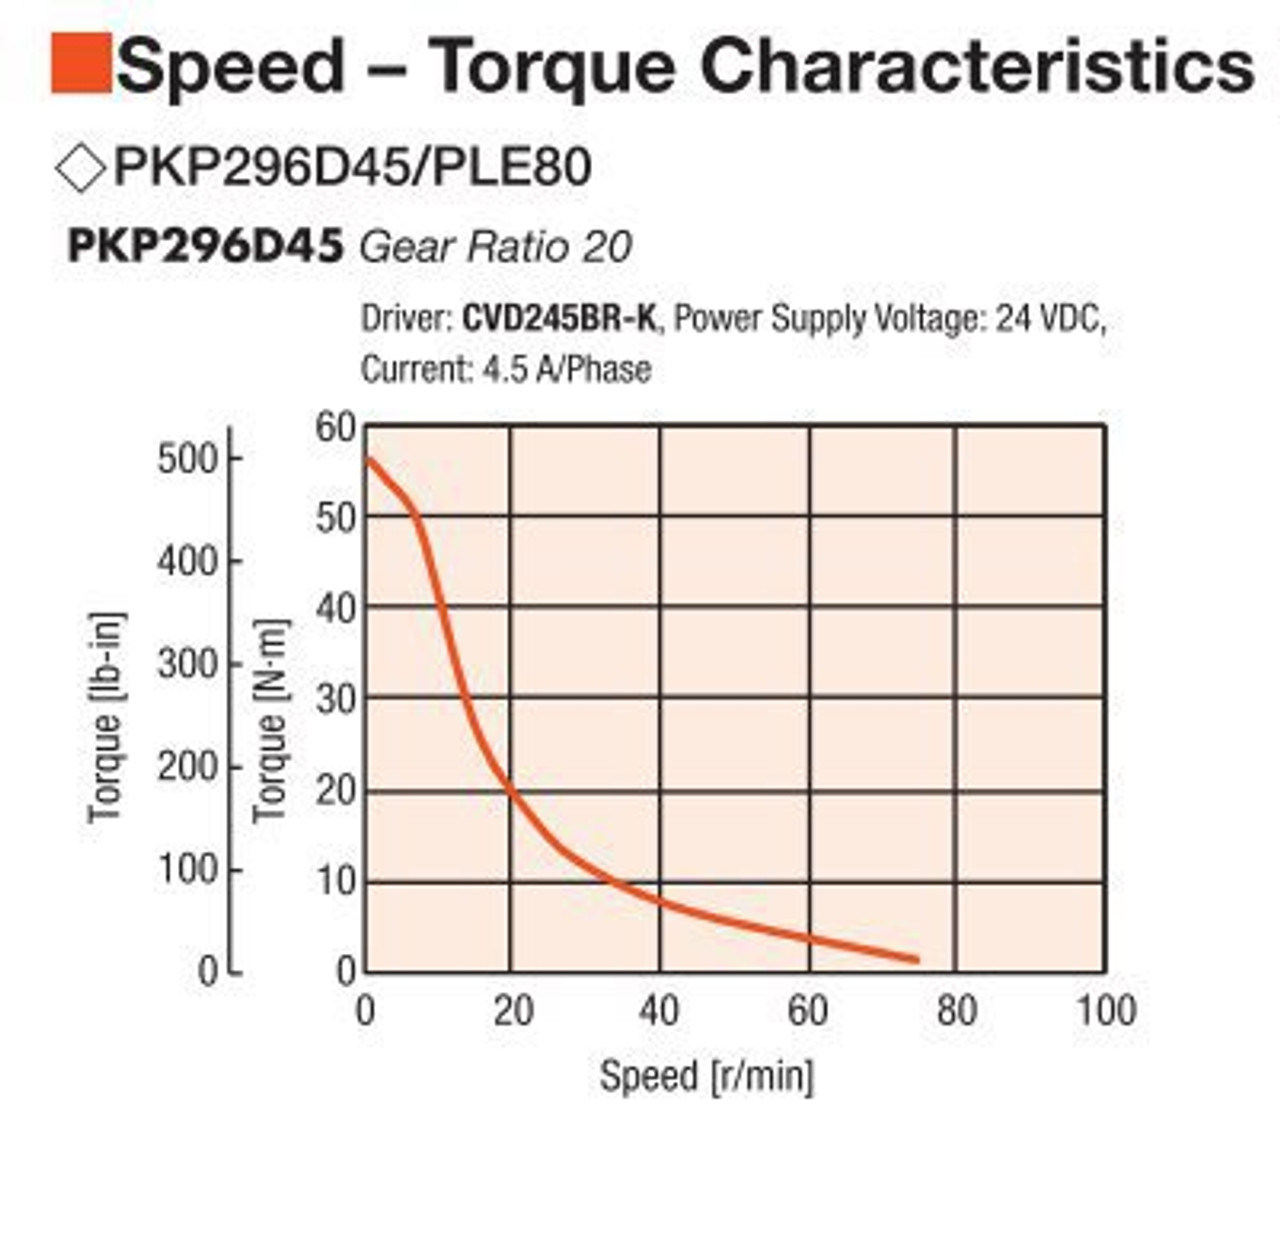 PKP296D45A / PLE80-20B / P00029 - Speed-Torque